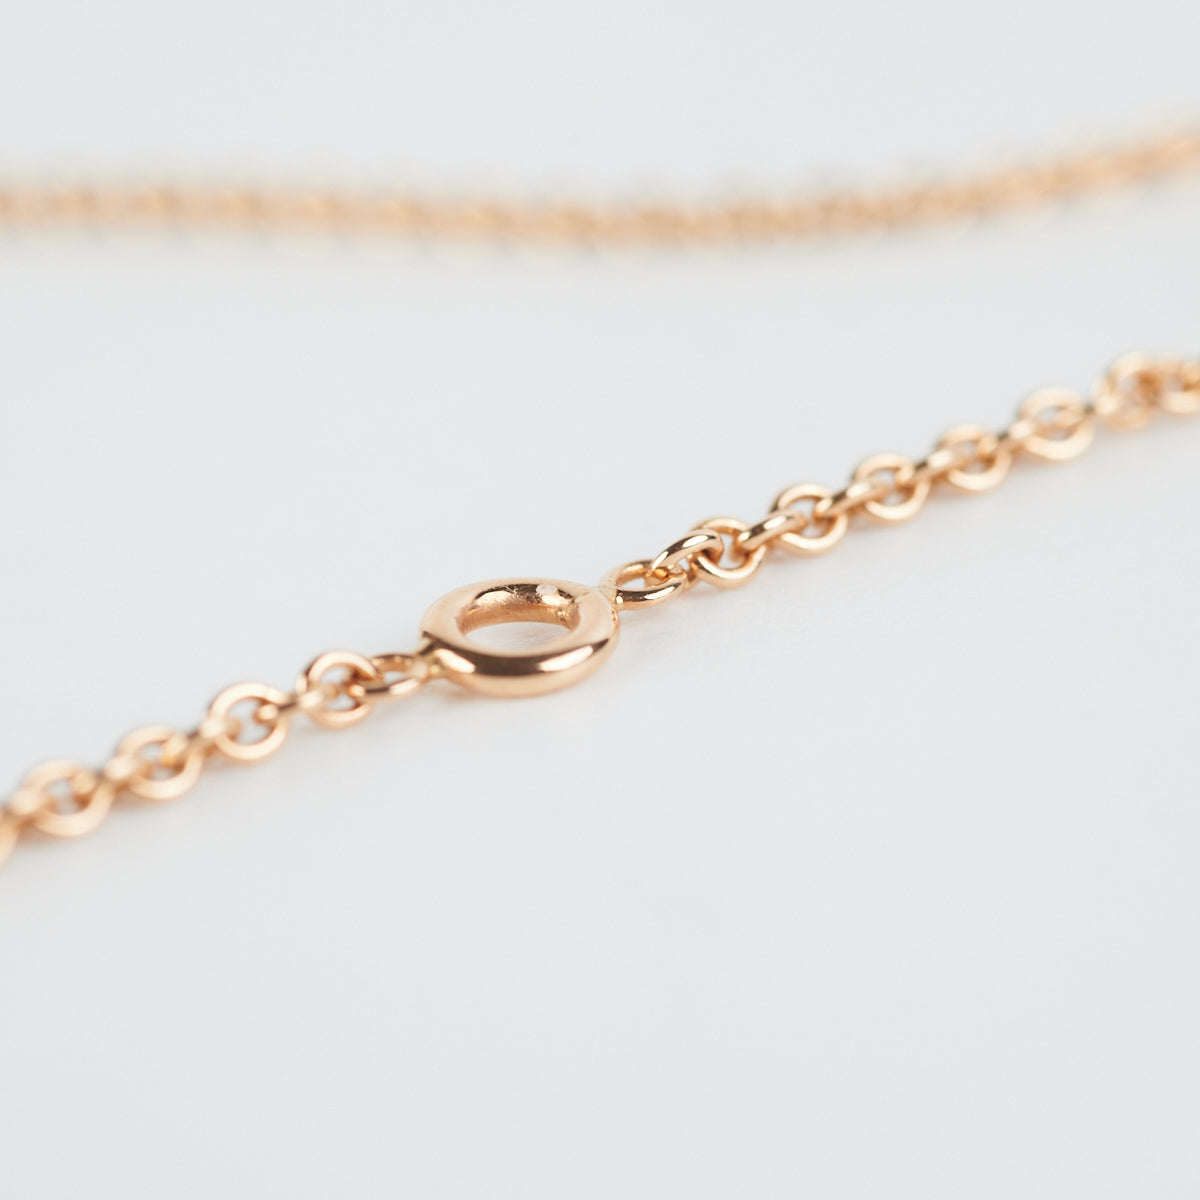 Hermès Birkin Charm Chain Necklace